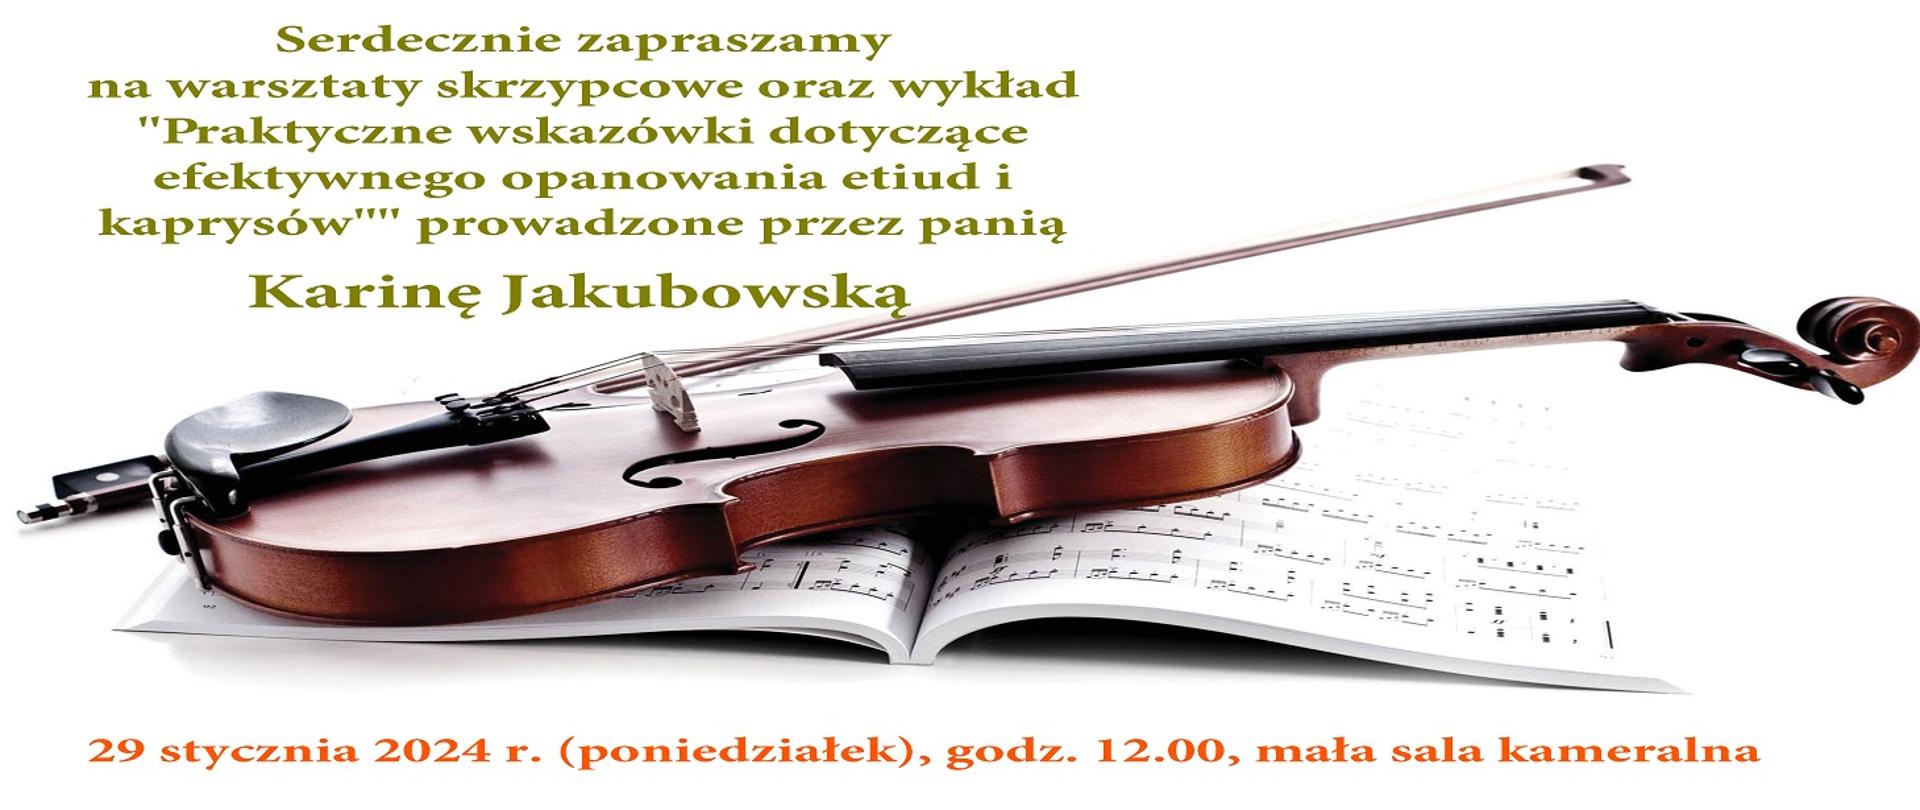 Warsztaty skrzypcowe z panią Kariną Jakubowską informacje i rysunek skrzypiec z nutami